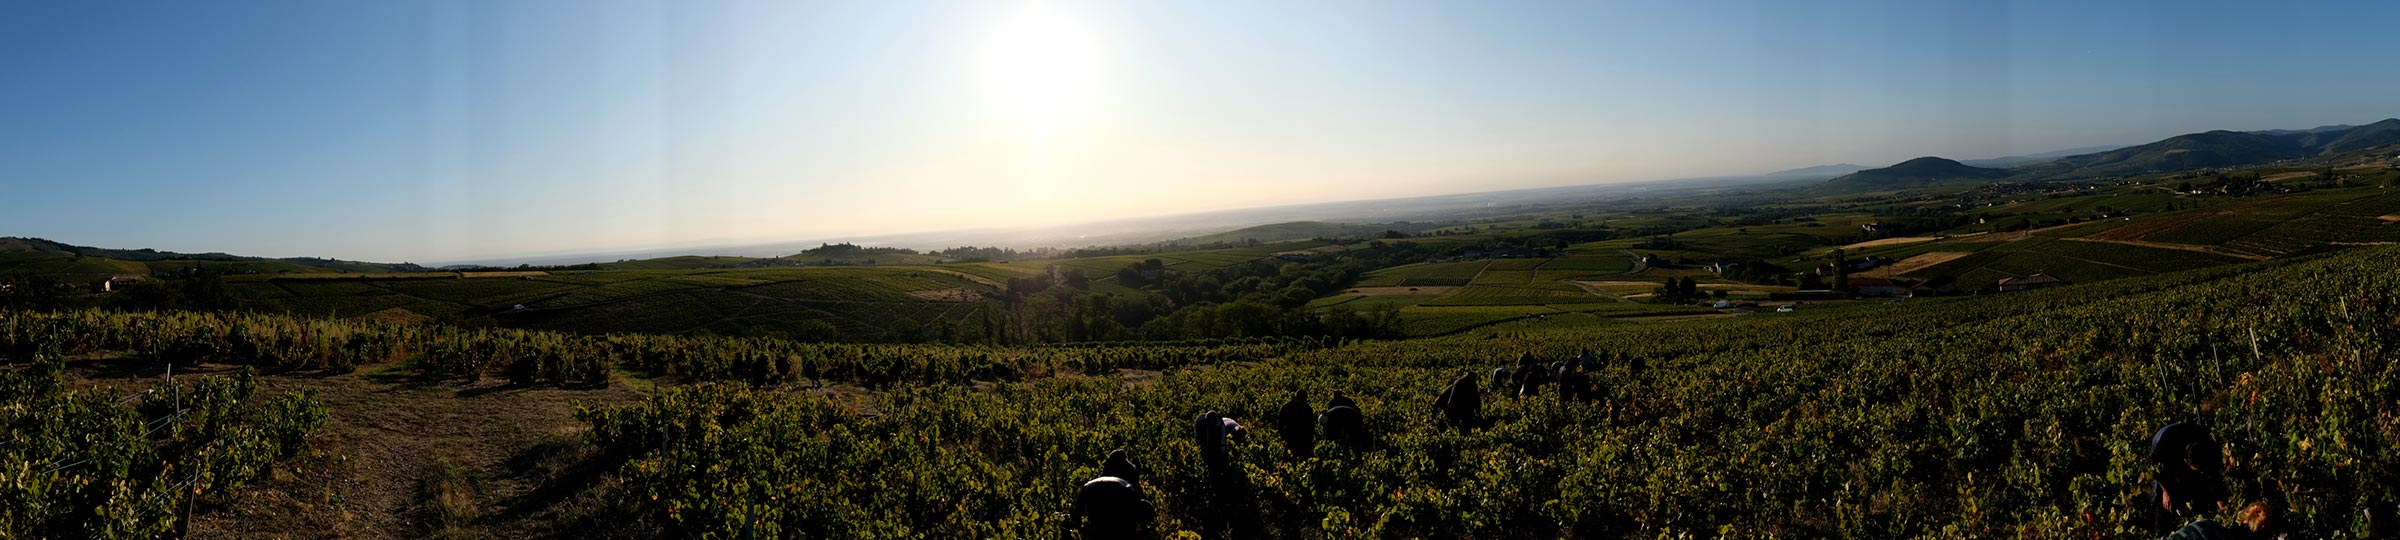 01_athenauem-region-beaujolais-vin-bourgogne